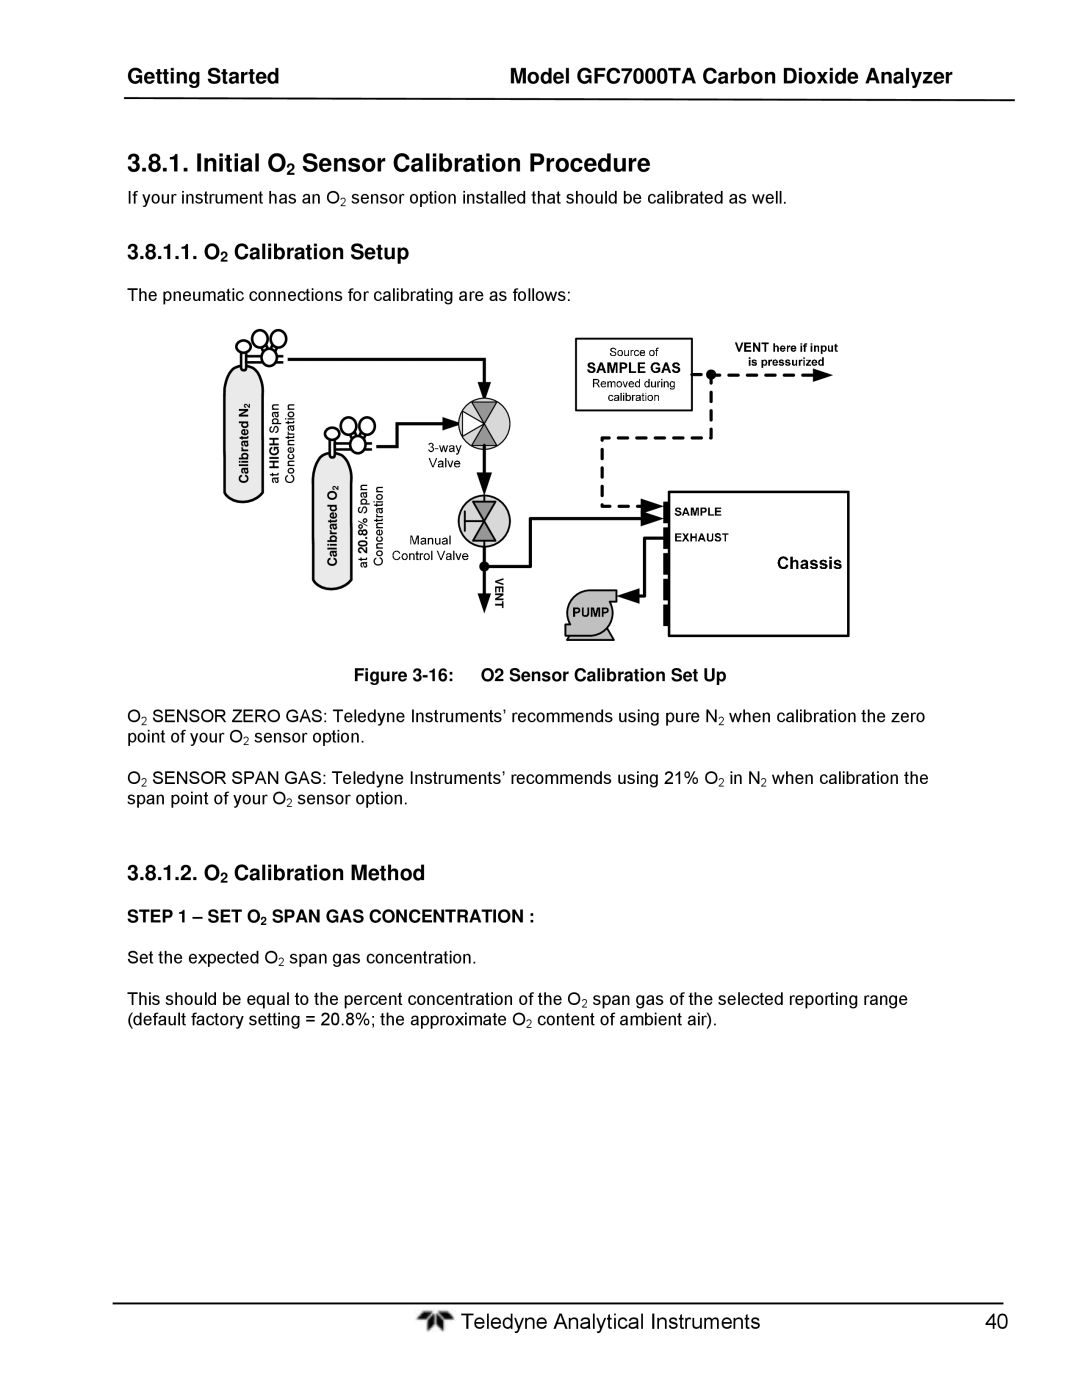 Teledyne gfc 7000ta Initial O2 Sensor Calibration Procedure, 1.1. O2 Calibration Setup, 1.2. O2 Calibration Method 